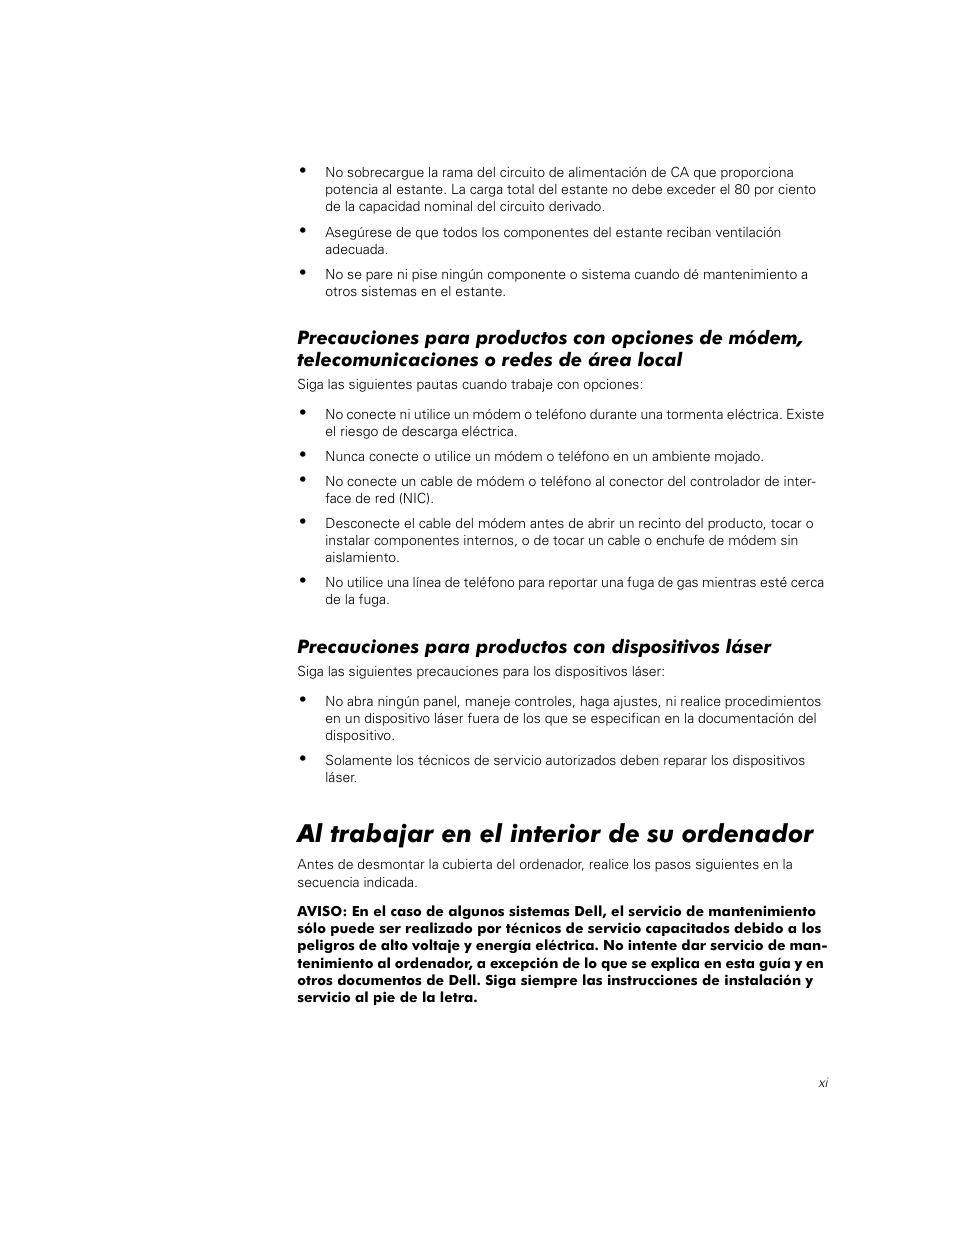 Precauciones para productos con dispositivos láser, Al trabajar en el interior de su ordenador | Dell PowerEdge 2450 Manual del usuario | Página 161 / 176